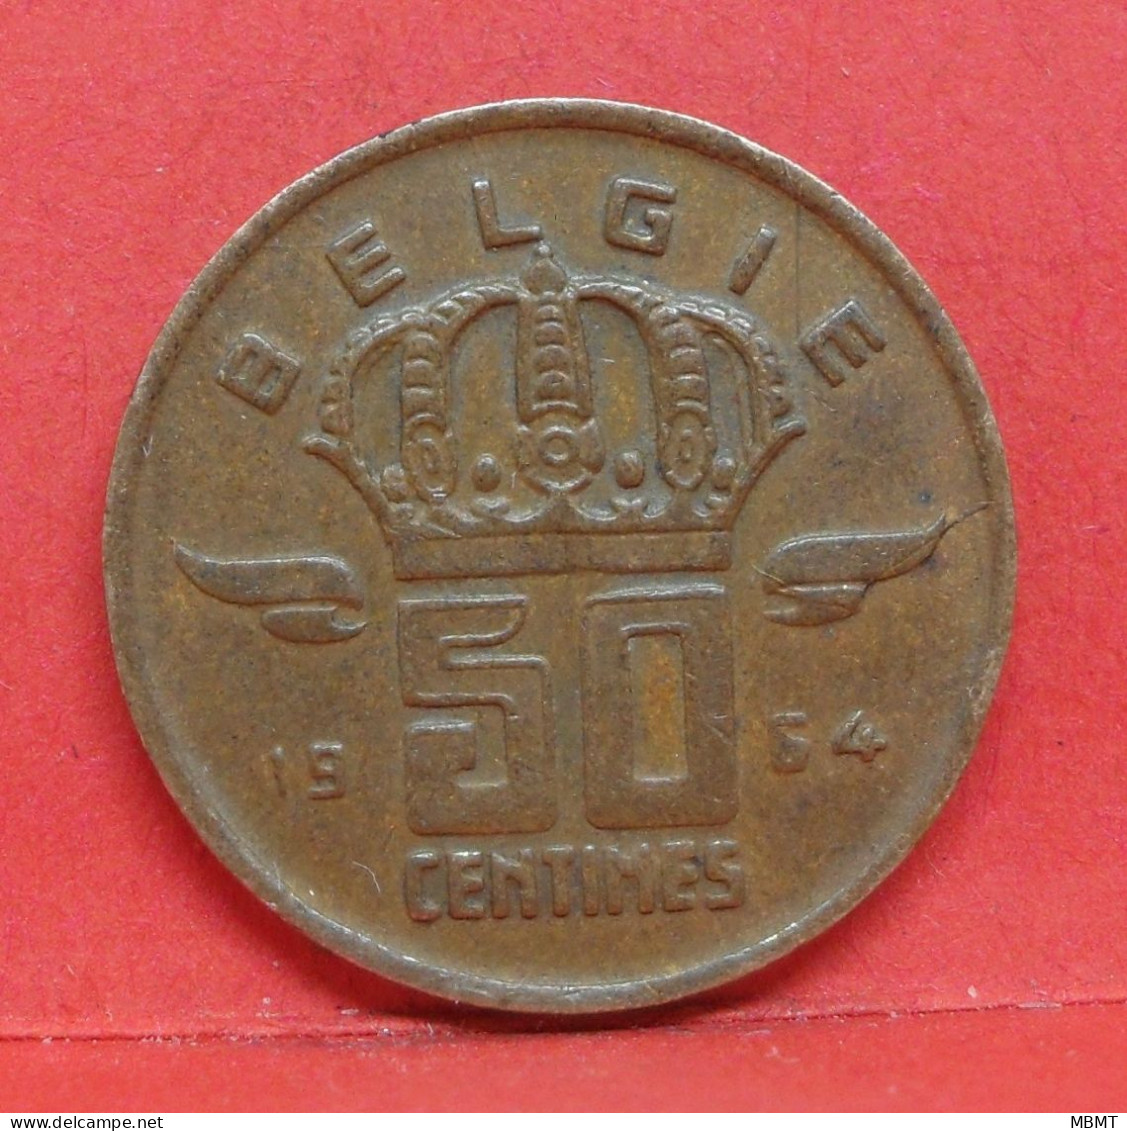 50 Centimes 1964 - TTB - Pièce Monnaie Belgie - Article N°1884 - 50 Centimes